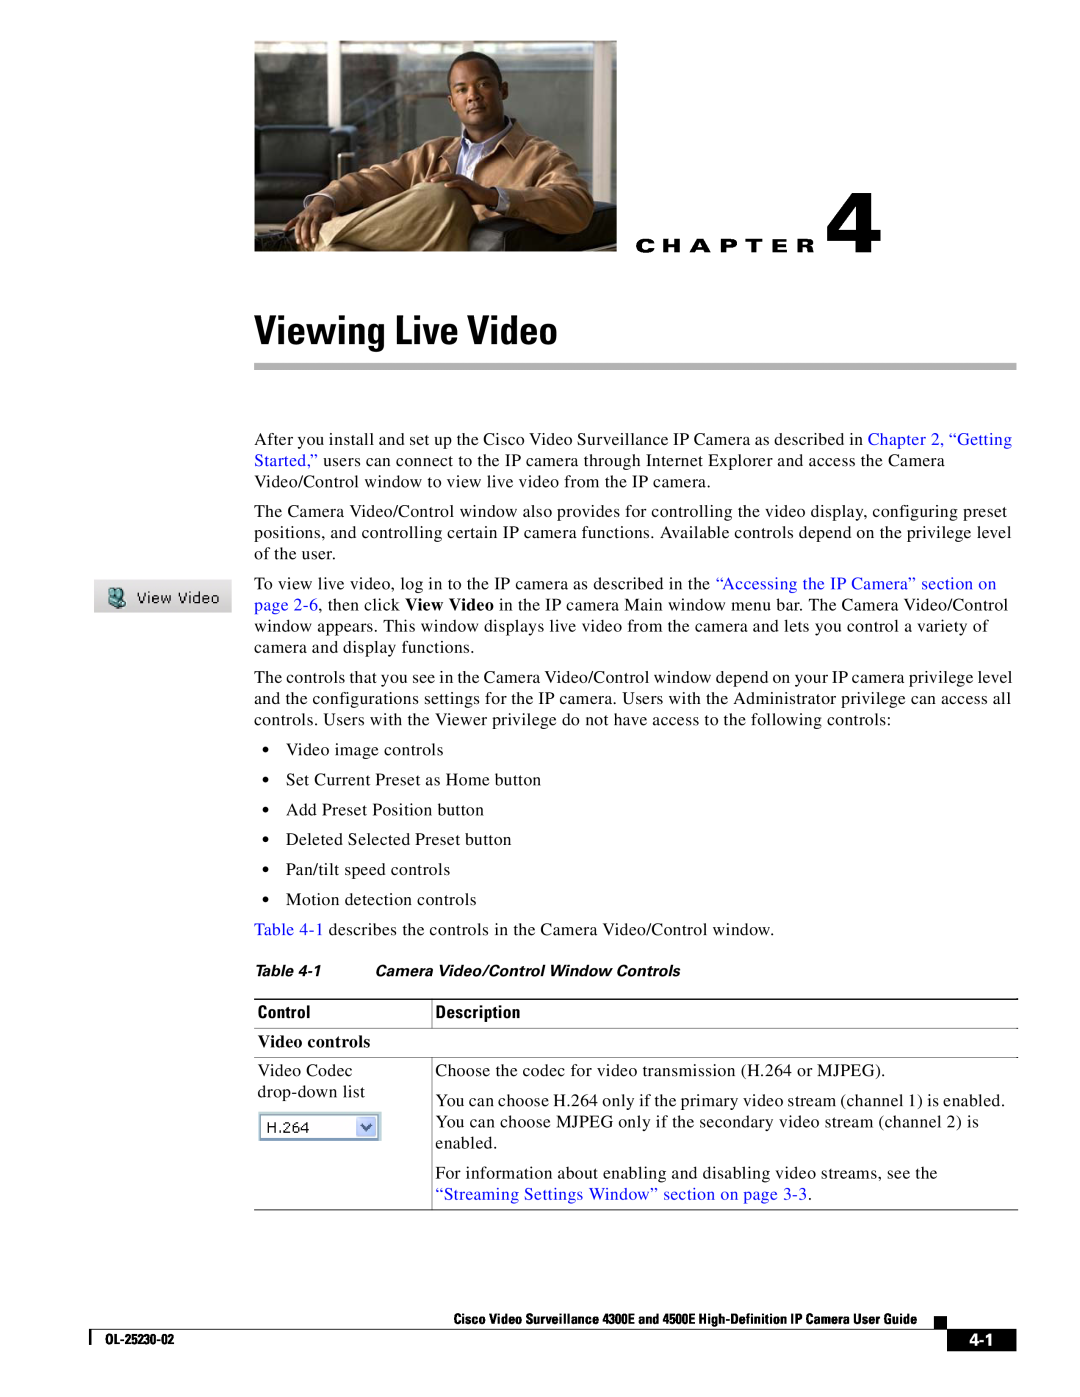 Cisco Systems 4500E, 4300E manual Viewing Live Video, C H A P T E R, Control, Description, Video controls 